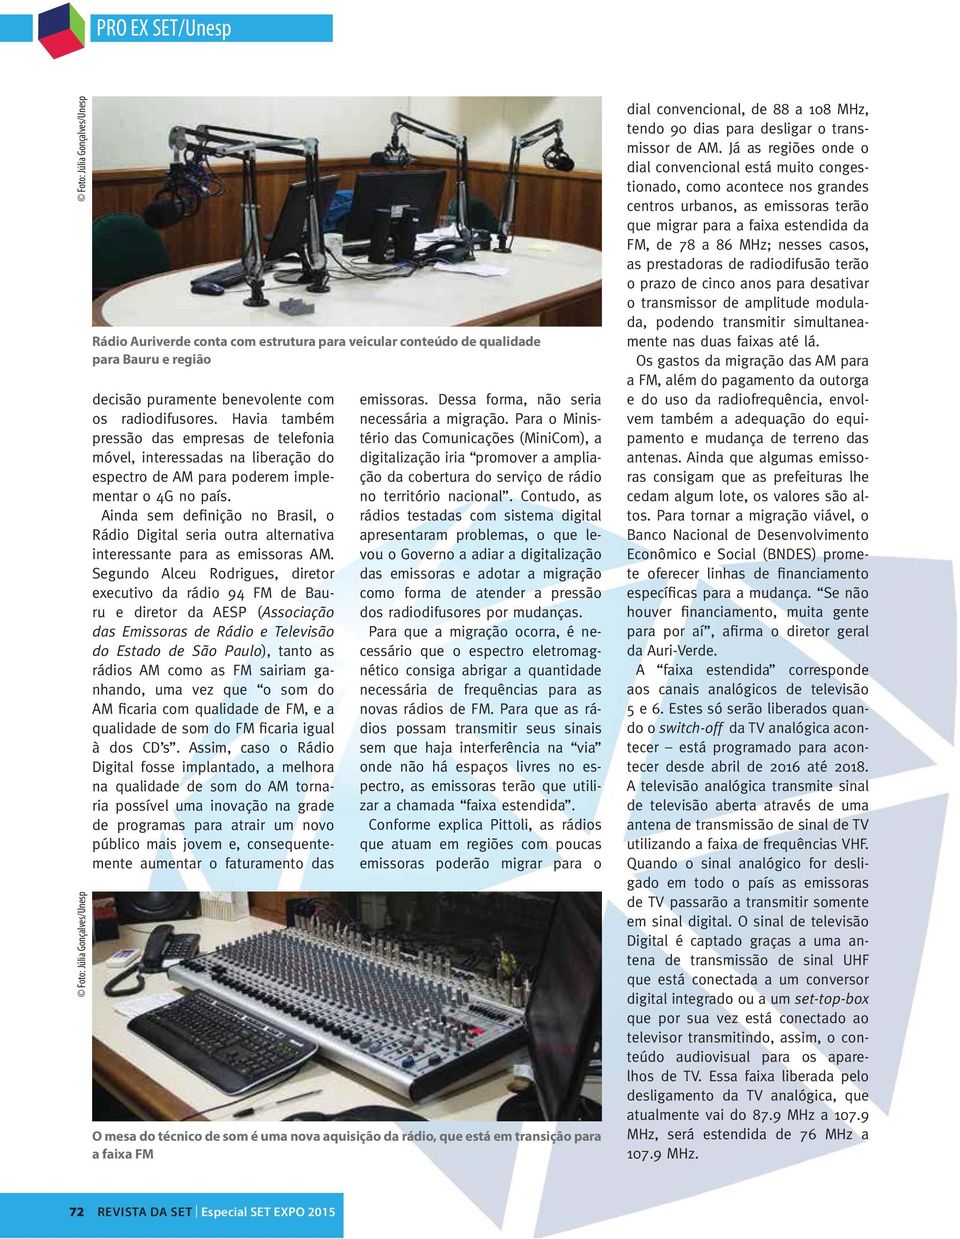 Ainda sem definição no Brasil, o Rádio Digital seria outra alternativa interessante para as emissoras AM.